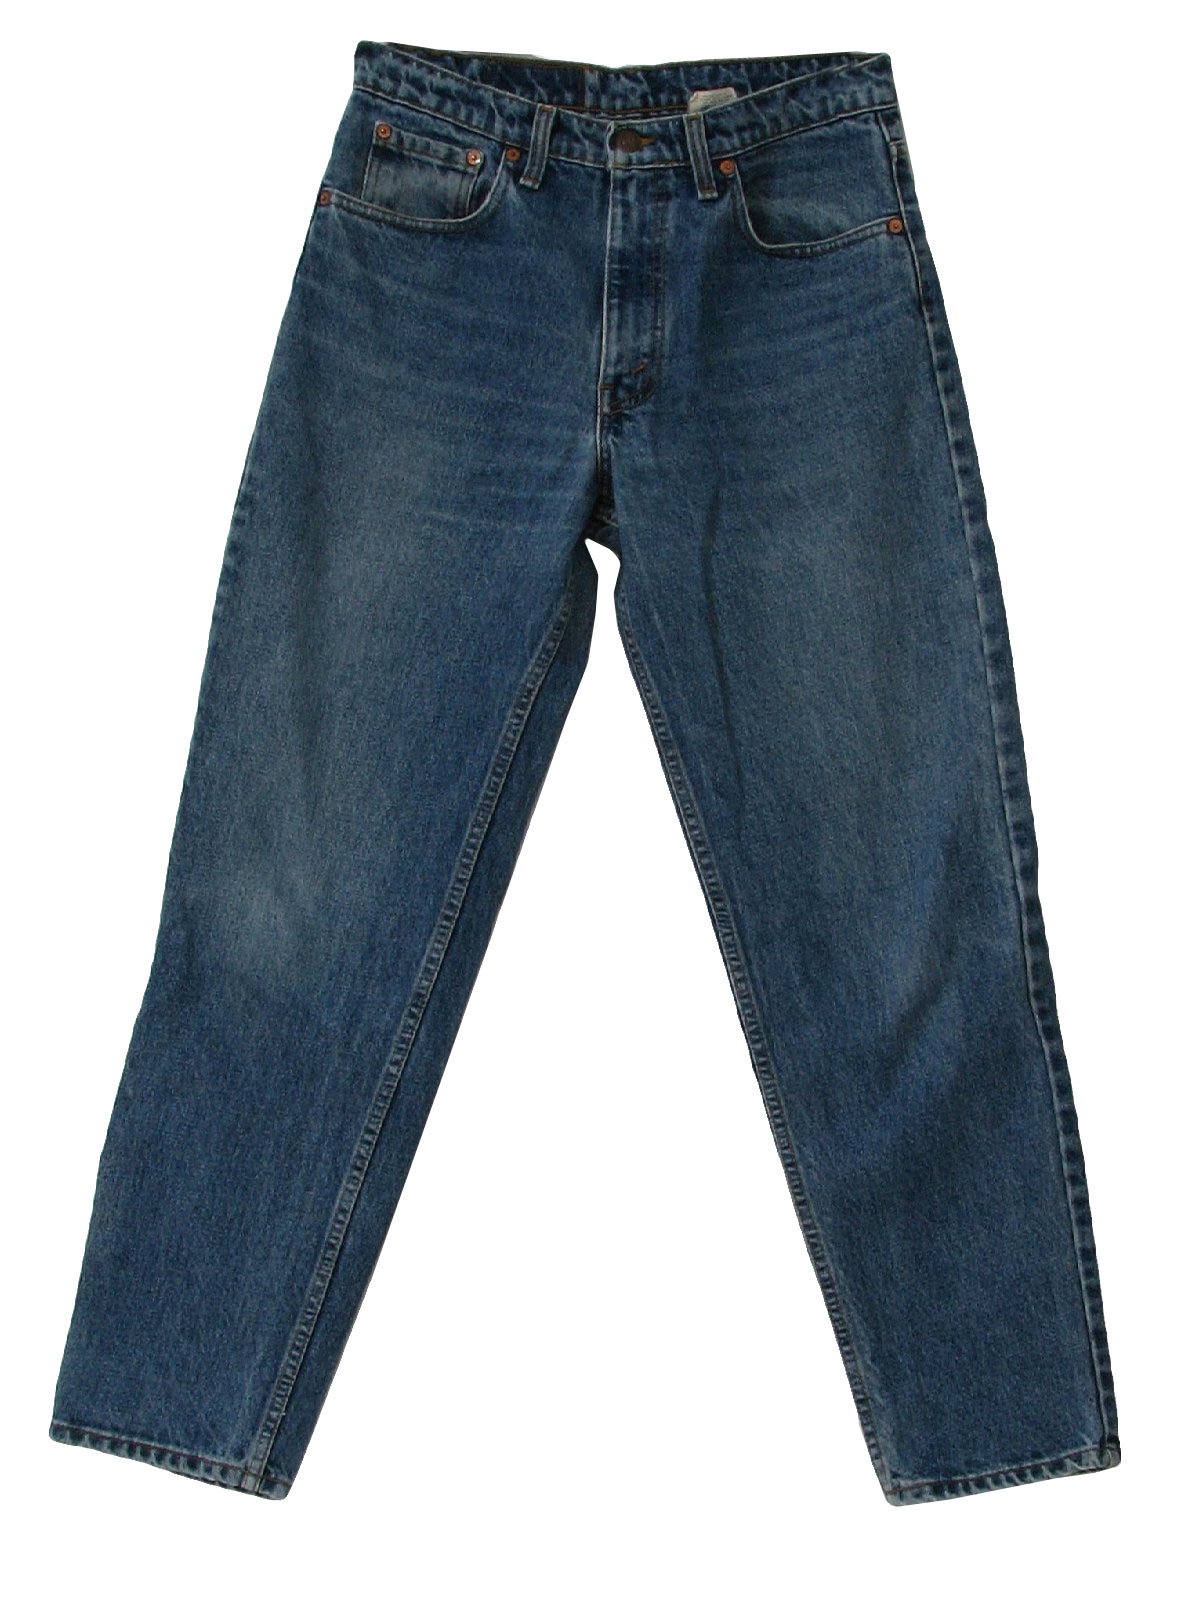 90s Vintage Levis Pants: 90s -Levis- Mens blue colored denim cotton ...